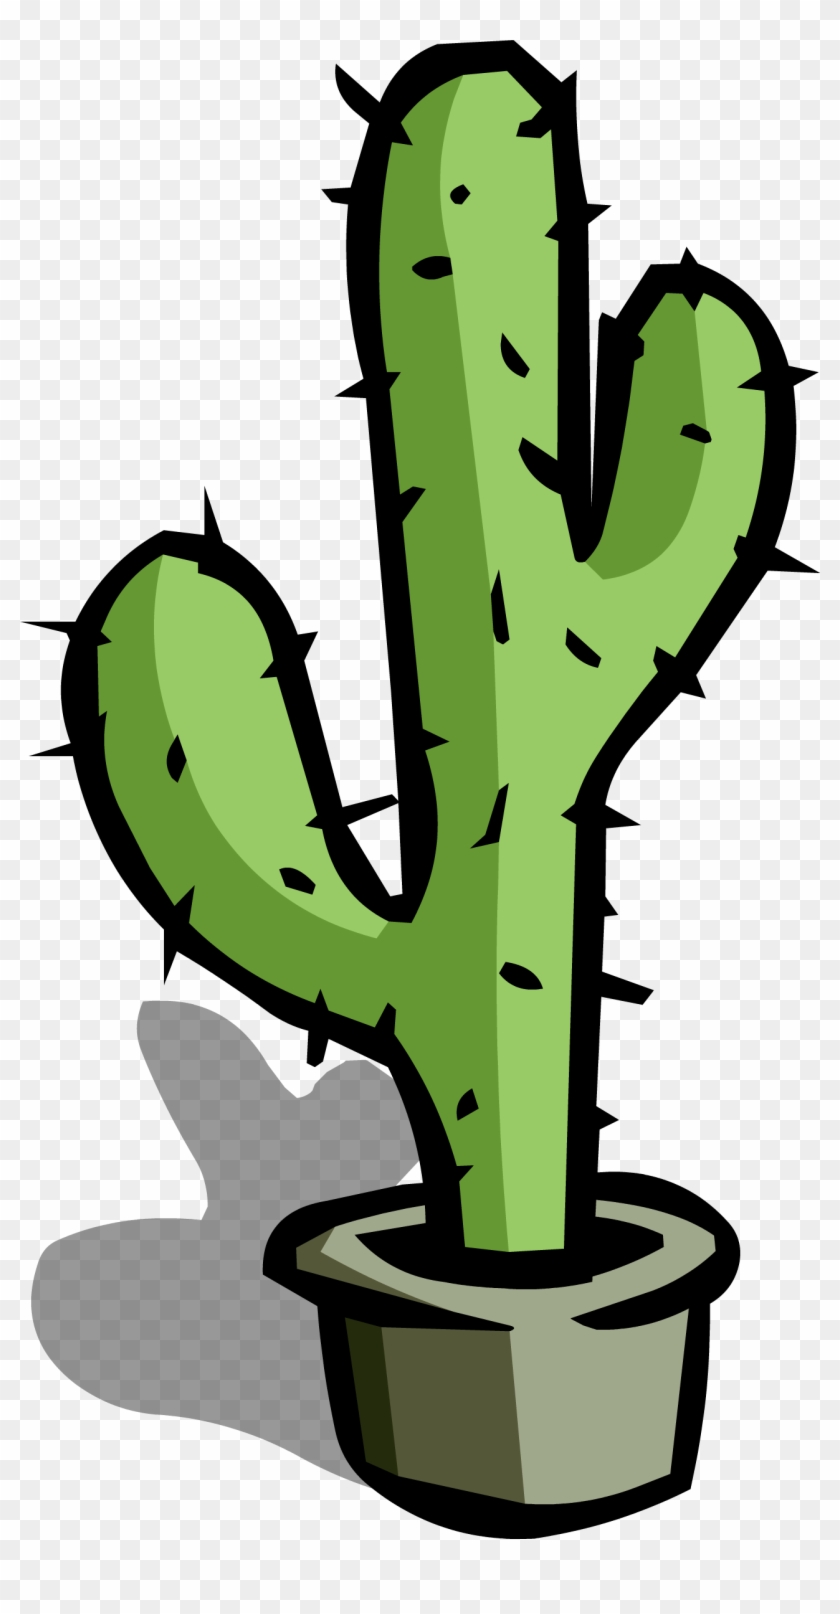 Large Cactus Sprite 002 - Cactus Png #185279